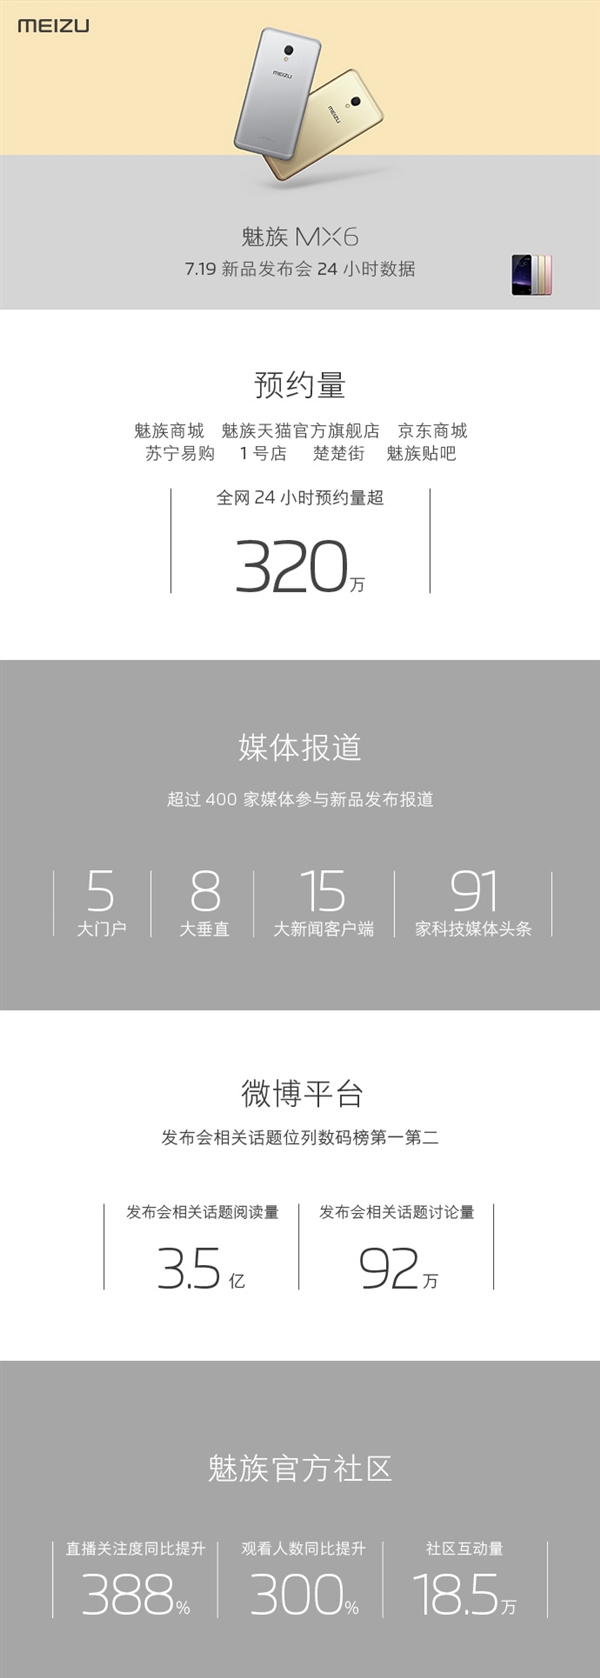 魅族发布MX6预定量：24小时超320万台